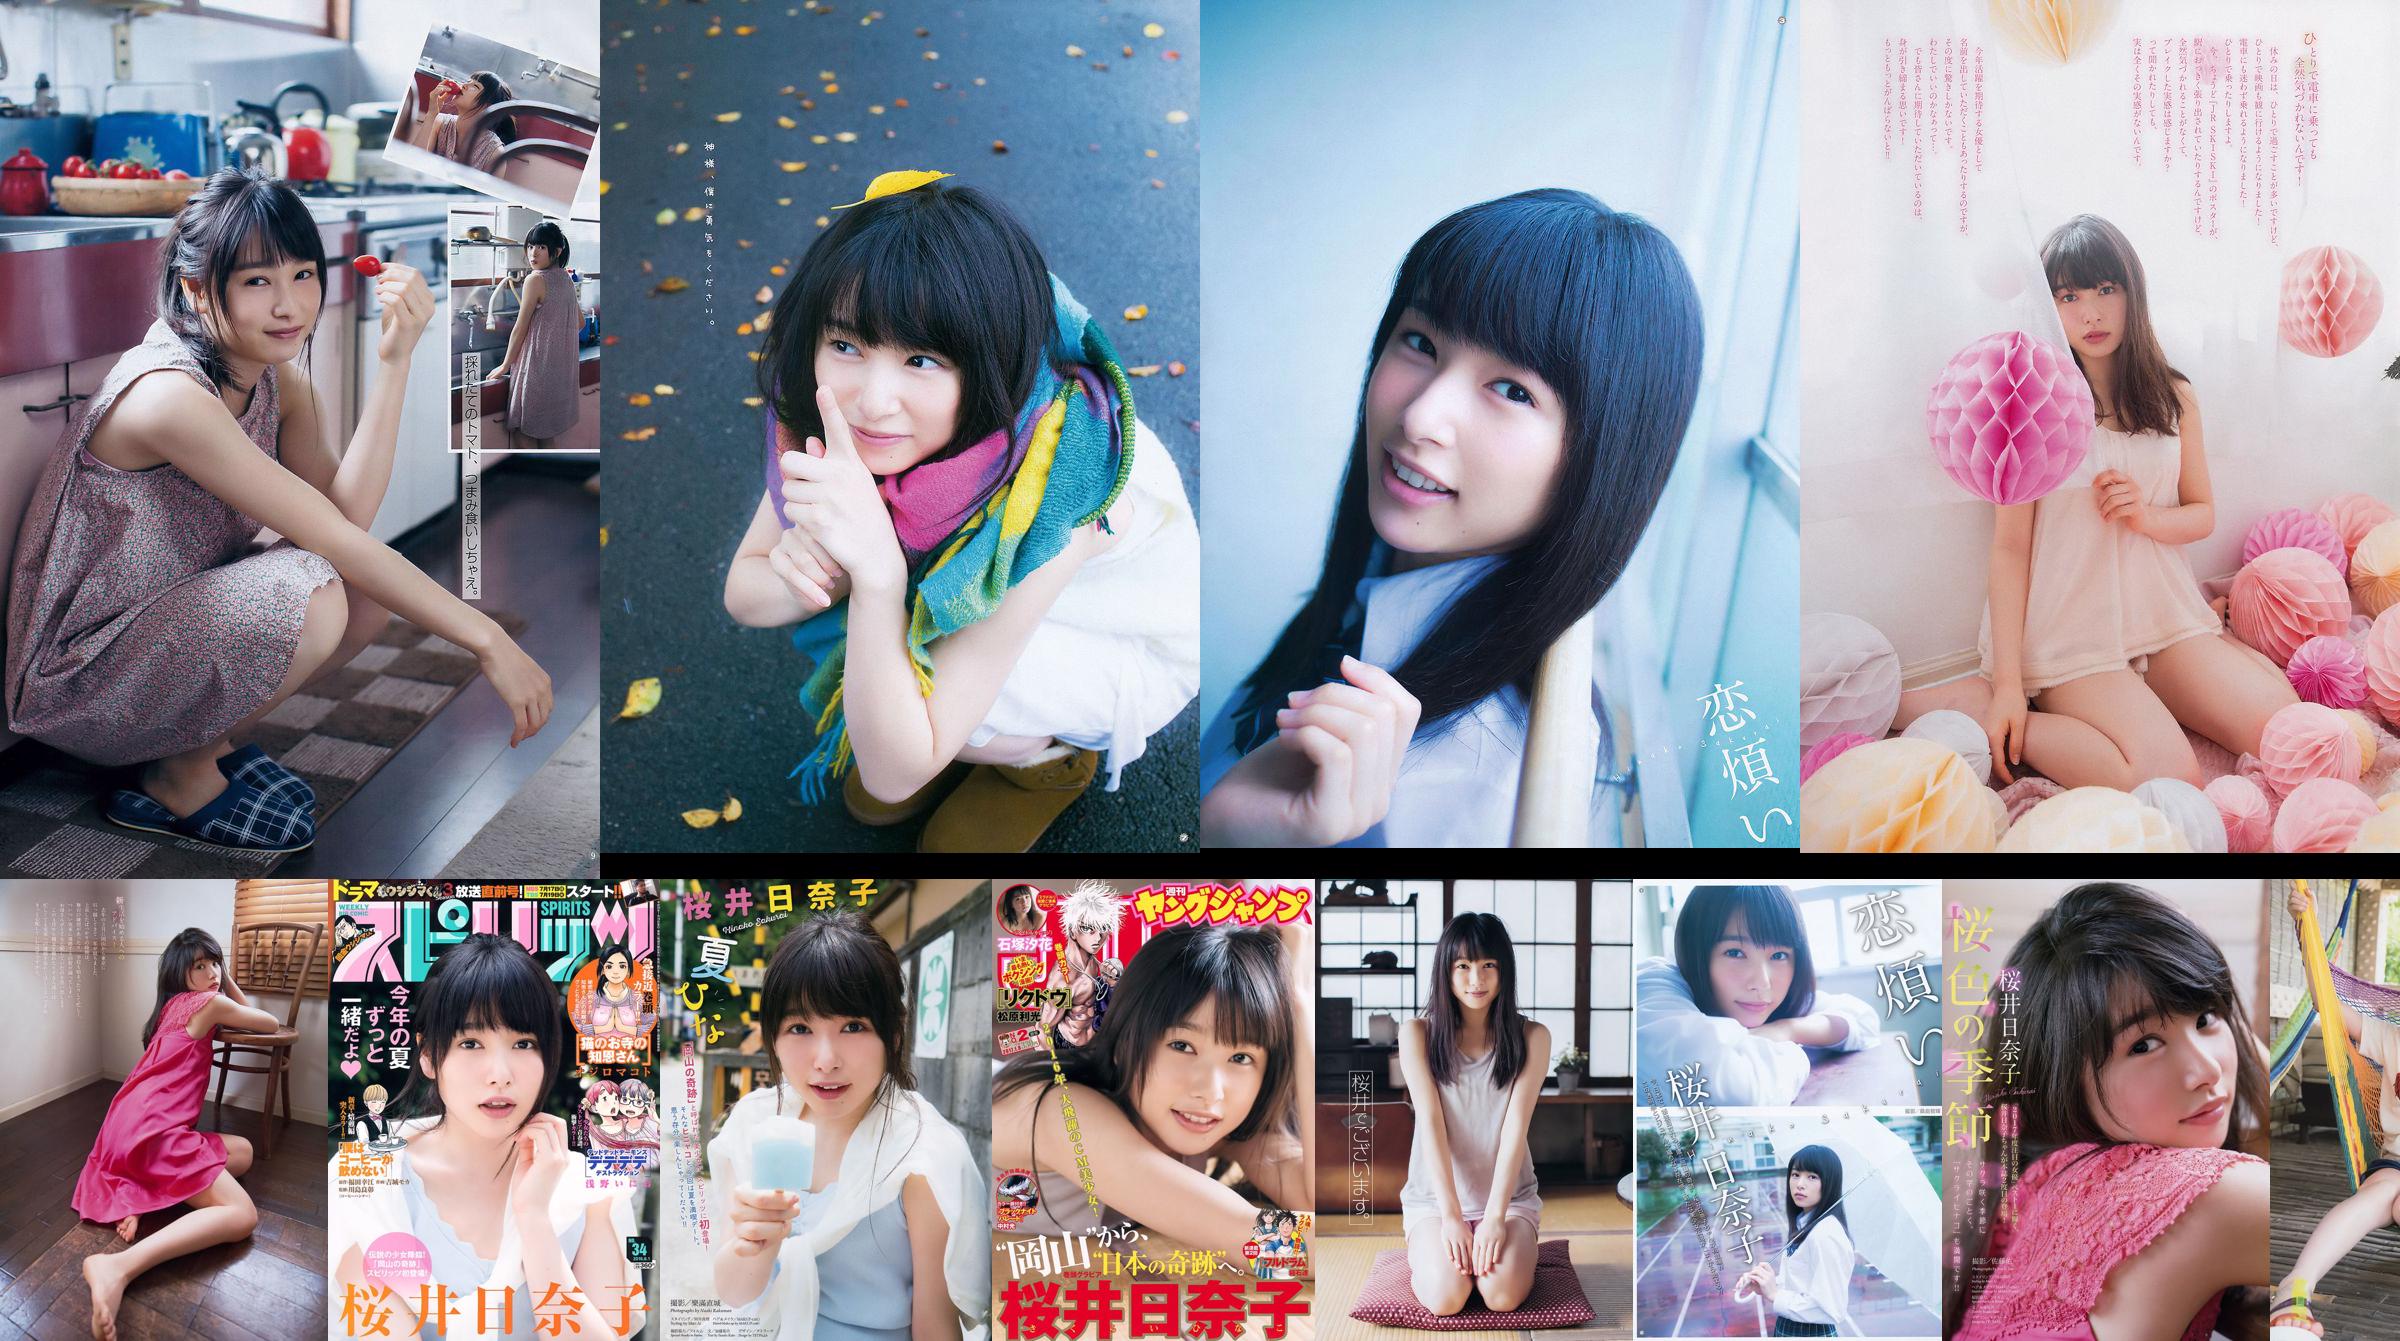 [Młody Gangan] Sakurai Hinako 2015 nr 22 Photo Magazine No.8922c2 Strona 3